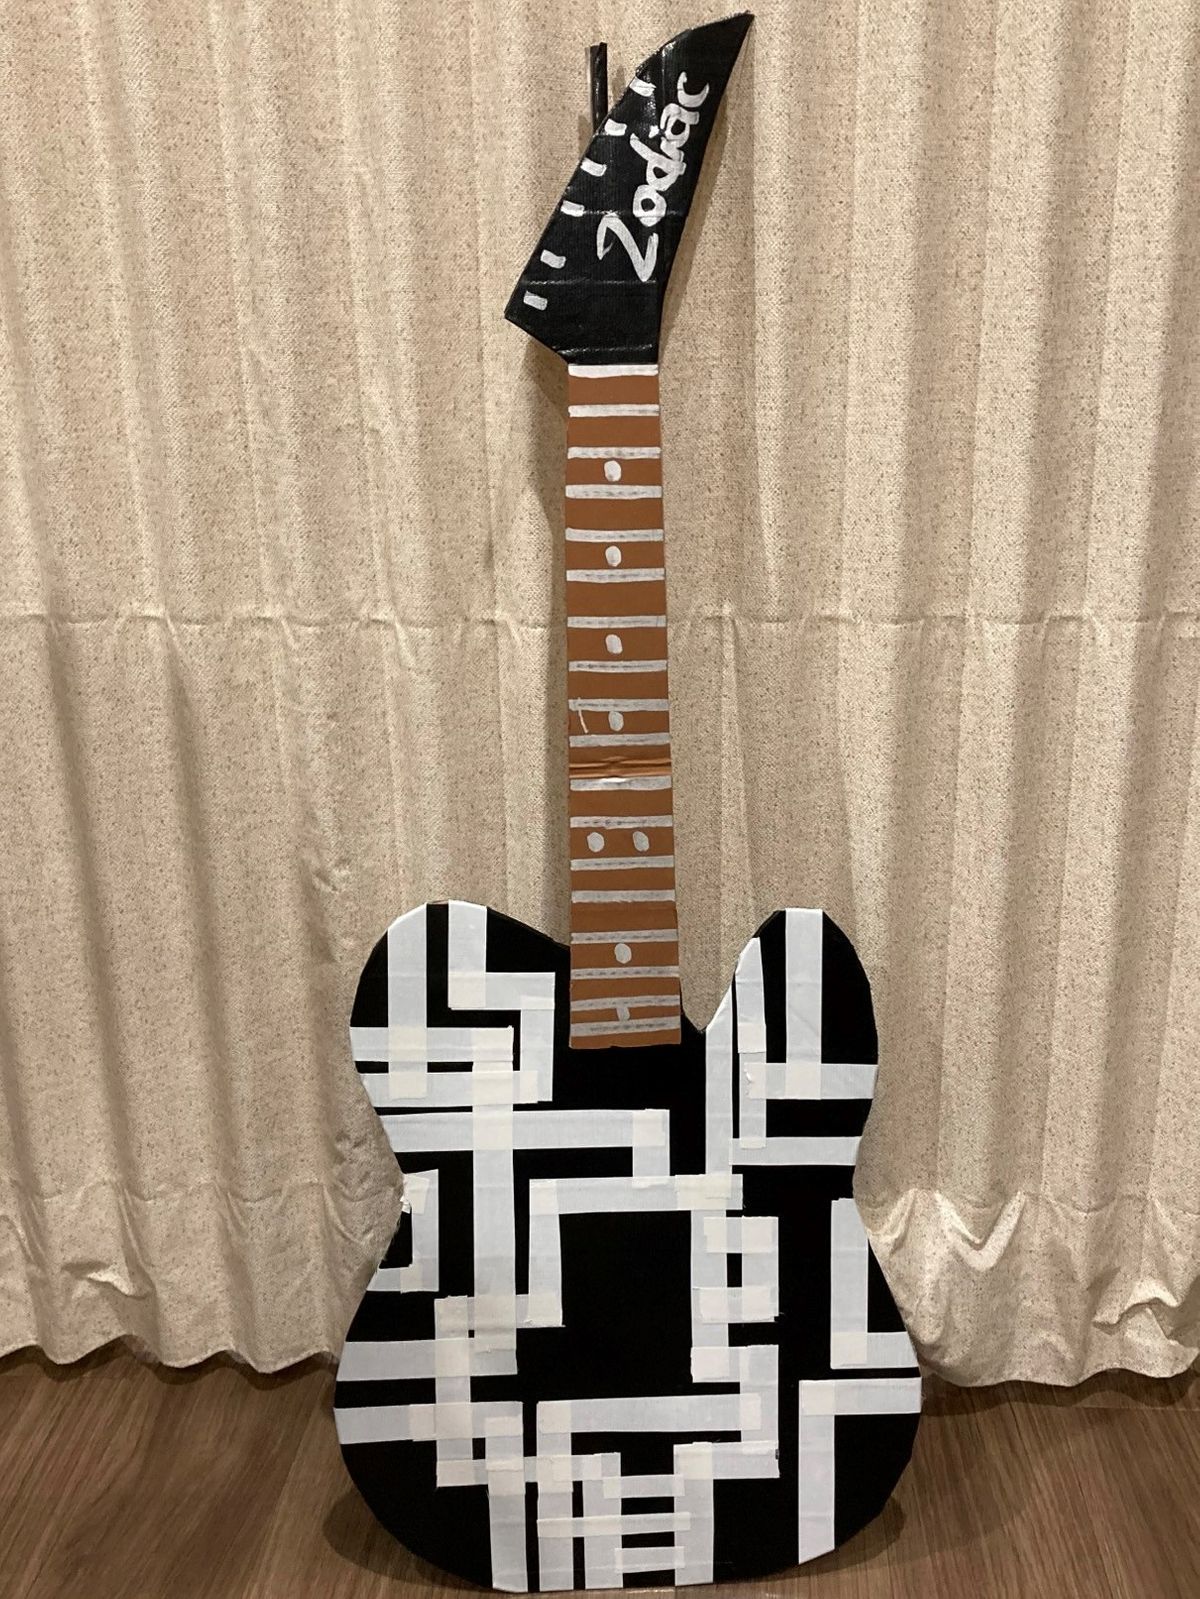 まさやんさんが製作した布袋寅泰さんモデルのギター